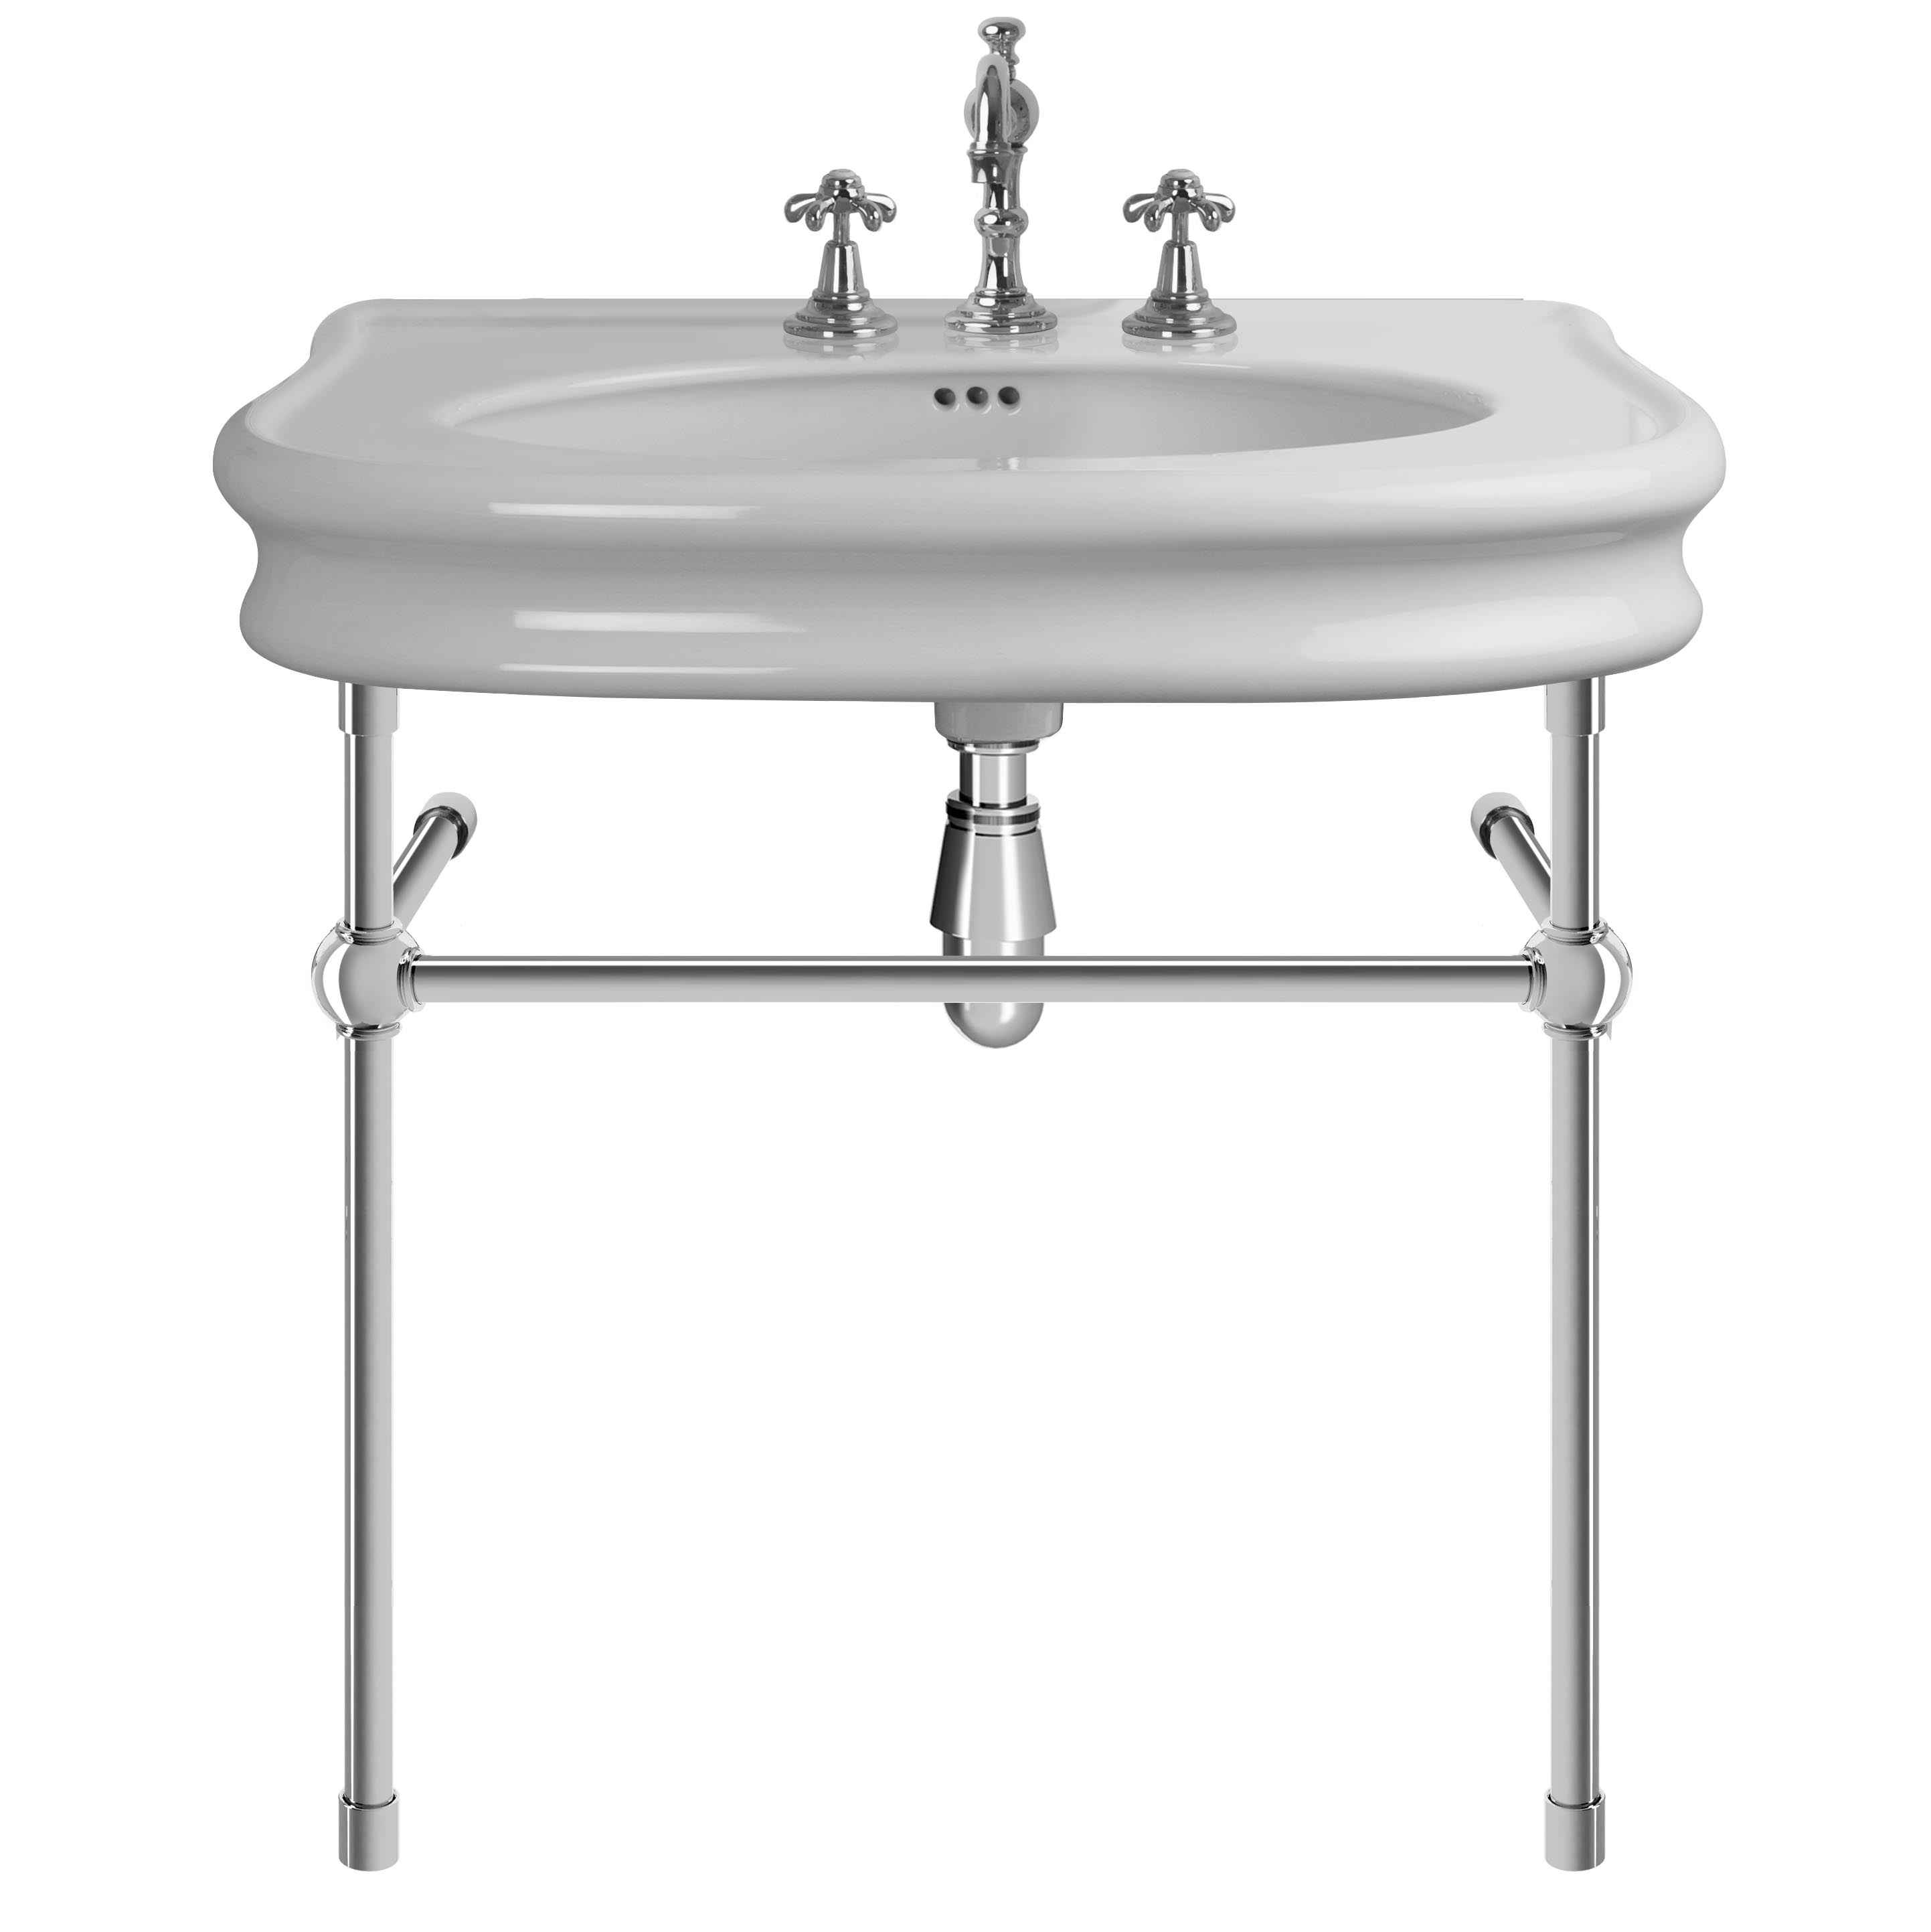 MS02-90-pietement-laiton Le Tréport washbasin on brass washstand, L. 90cm